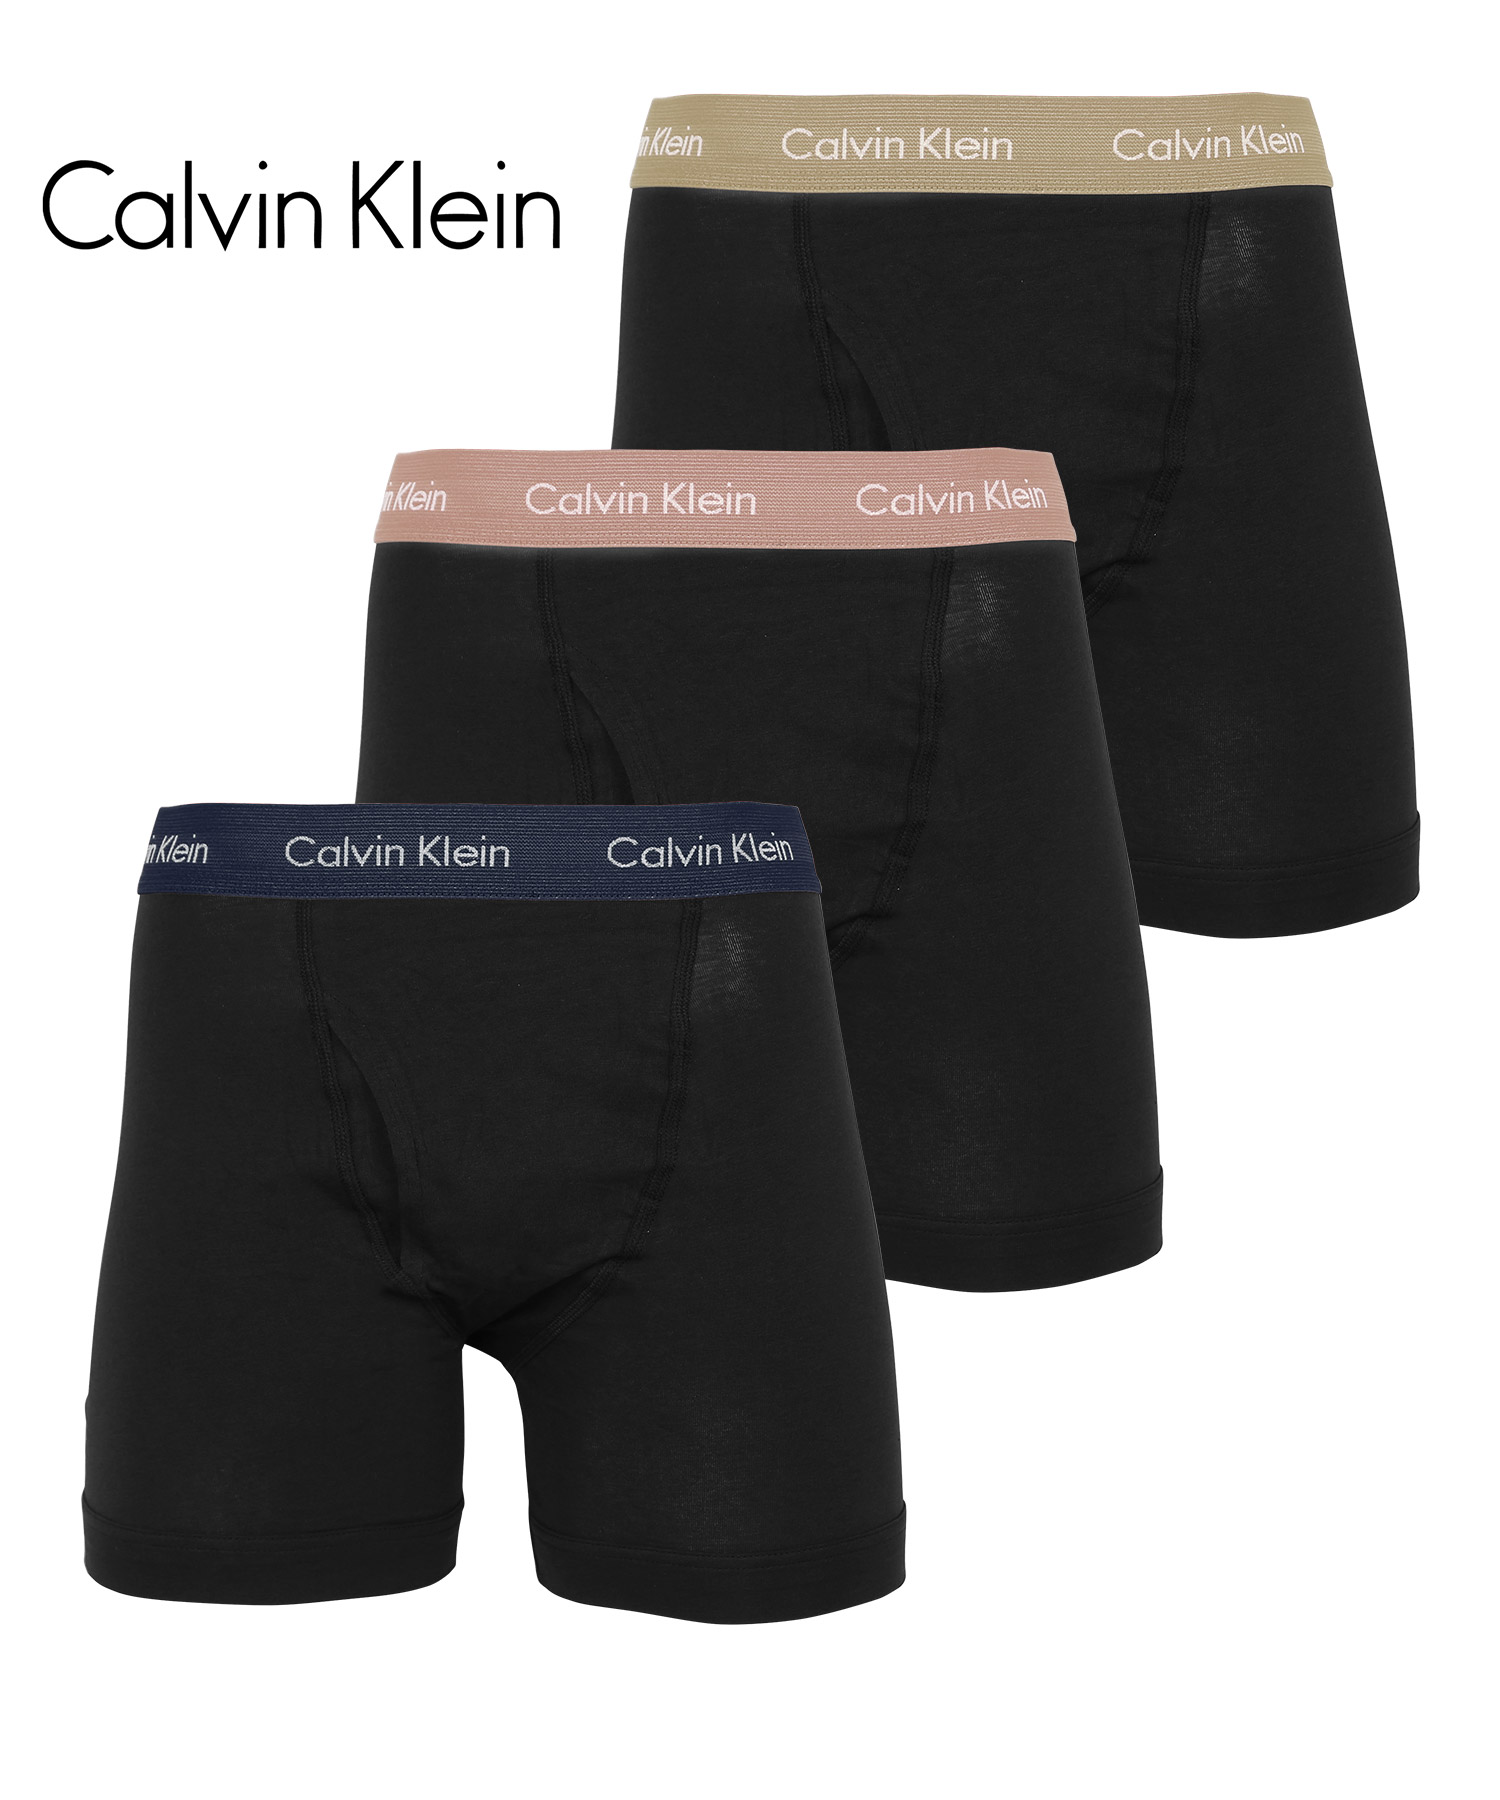 カルバンクライン ボクサーパンツ 3枚セット メンズ ロング Calvin Klein アンダーウェア 男性下着 綿混 コットン 前開き CK ロゴ  高級 ハイブランド